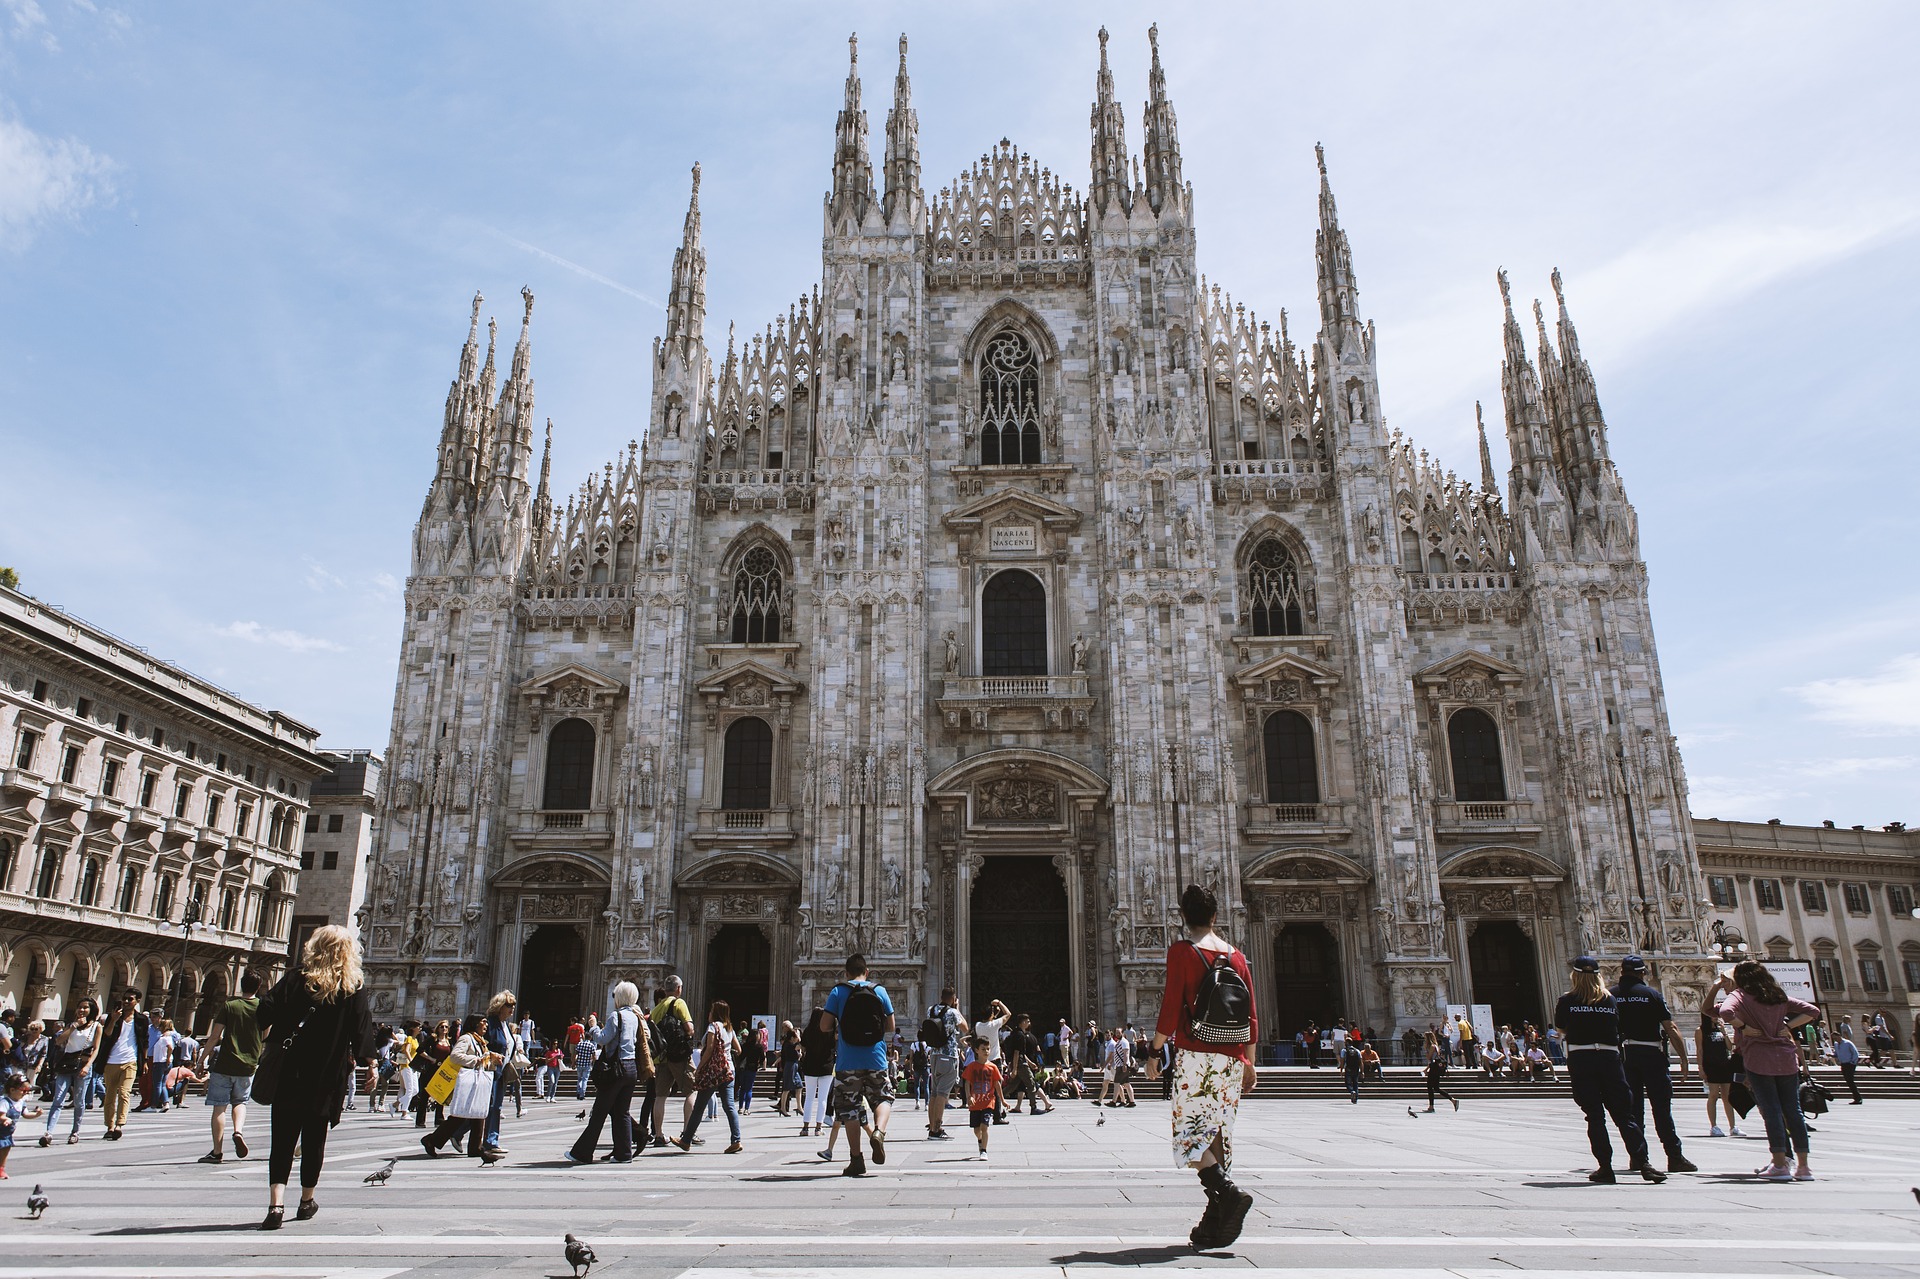 Städtereise Mailand